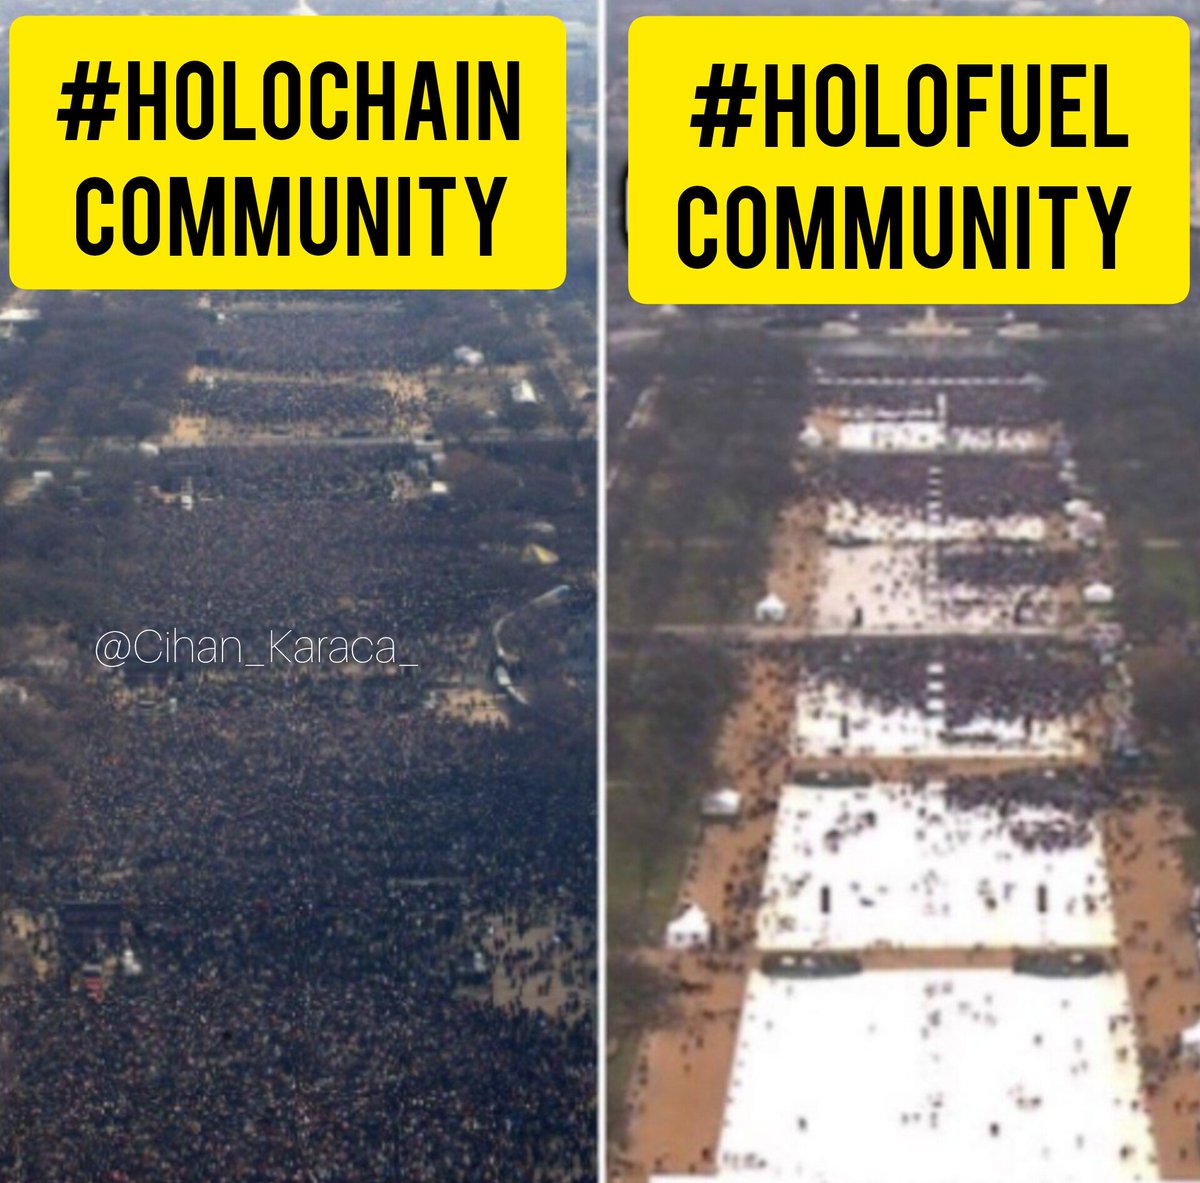 Dostlar #Holofuel aktif olduğunda sizce durum böyle mi olur? Yoksa tam tersi mi? Siz #Holochain'den devam edeceğim diyenlerden misiniz? Yoksa #Holo'ları takas etmeyi düşünenlerden mi? $Hot Yorumlarda buluşalım kendi aramızda tartışalım bunu. Ben %25 geçeceğim heralde.🤔 $Holo